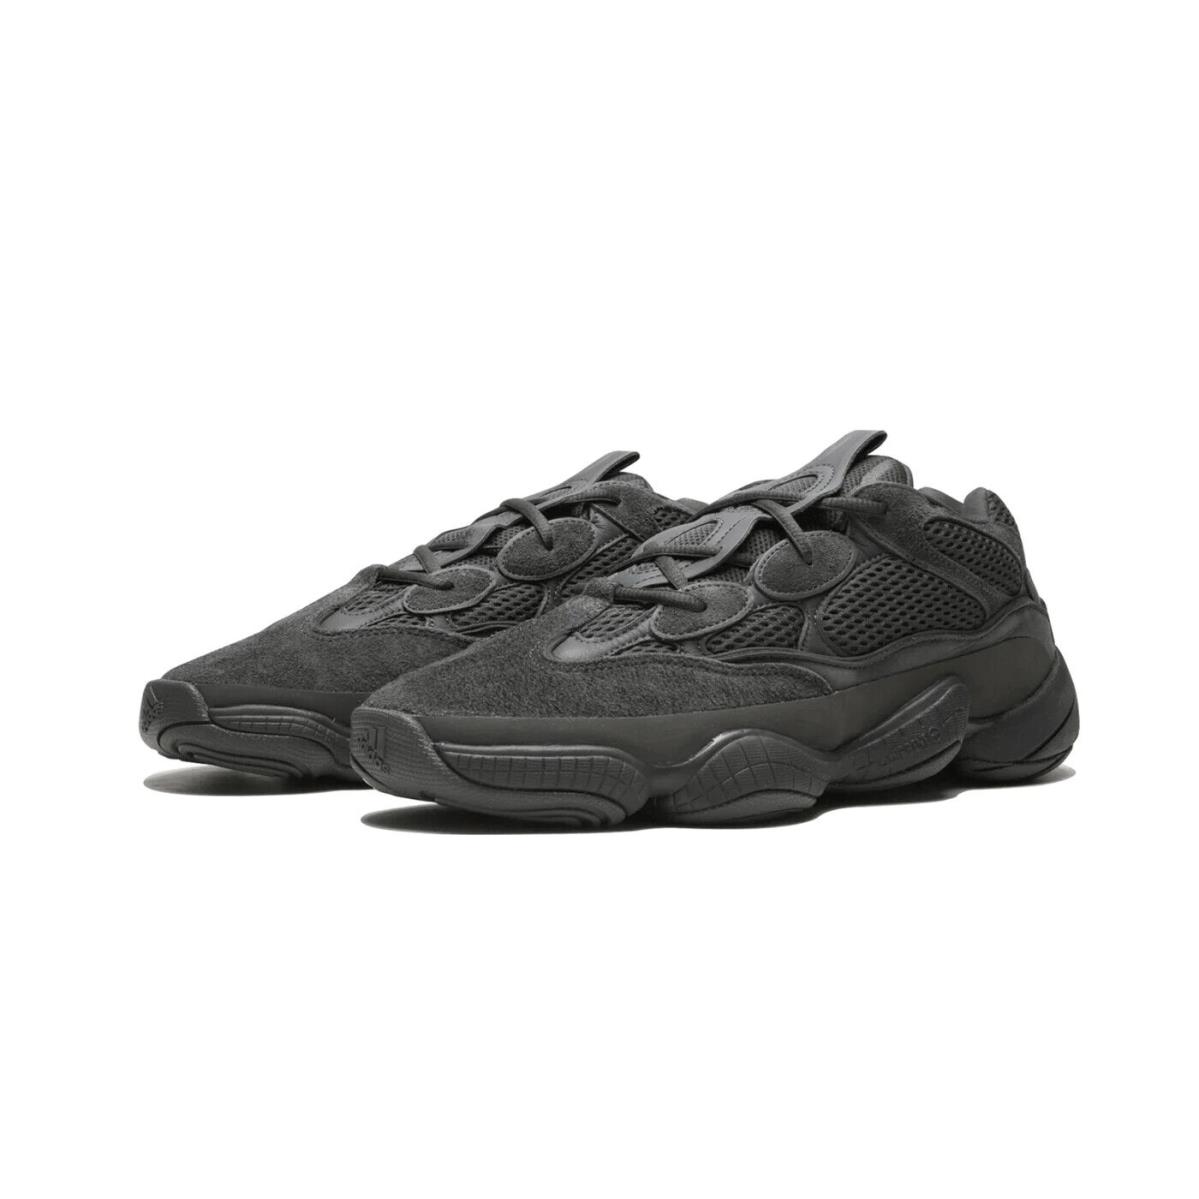 Mens Adidas Yeezy 500 `utility Black` Fashion Sneakers F36640